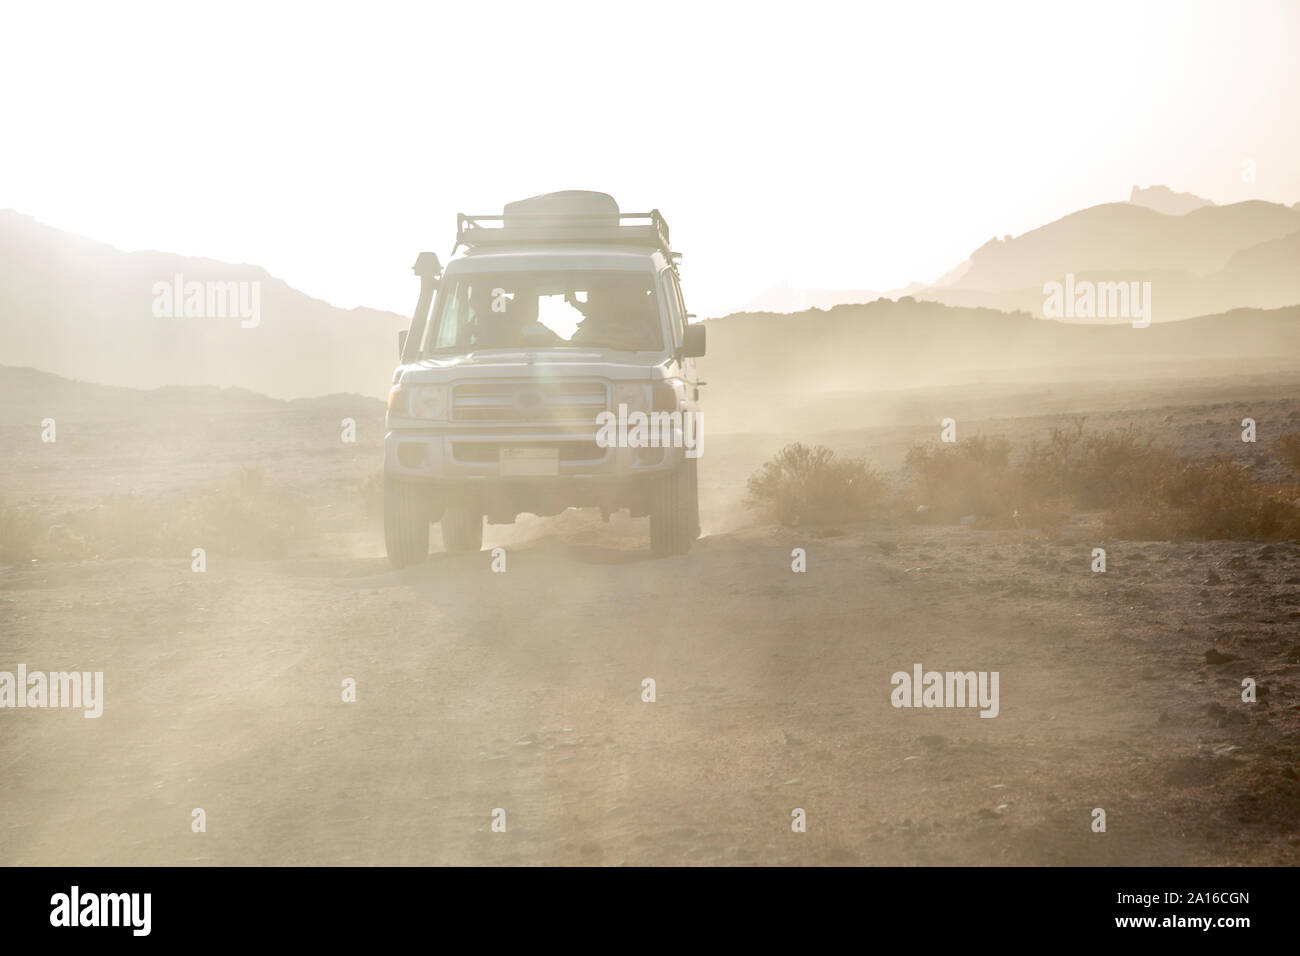 Véhicule hors route sur chemin de terre au milieu de la poussière dans le ciel du désert contre pendant le coucher du soleil Banque D'Images